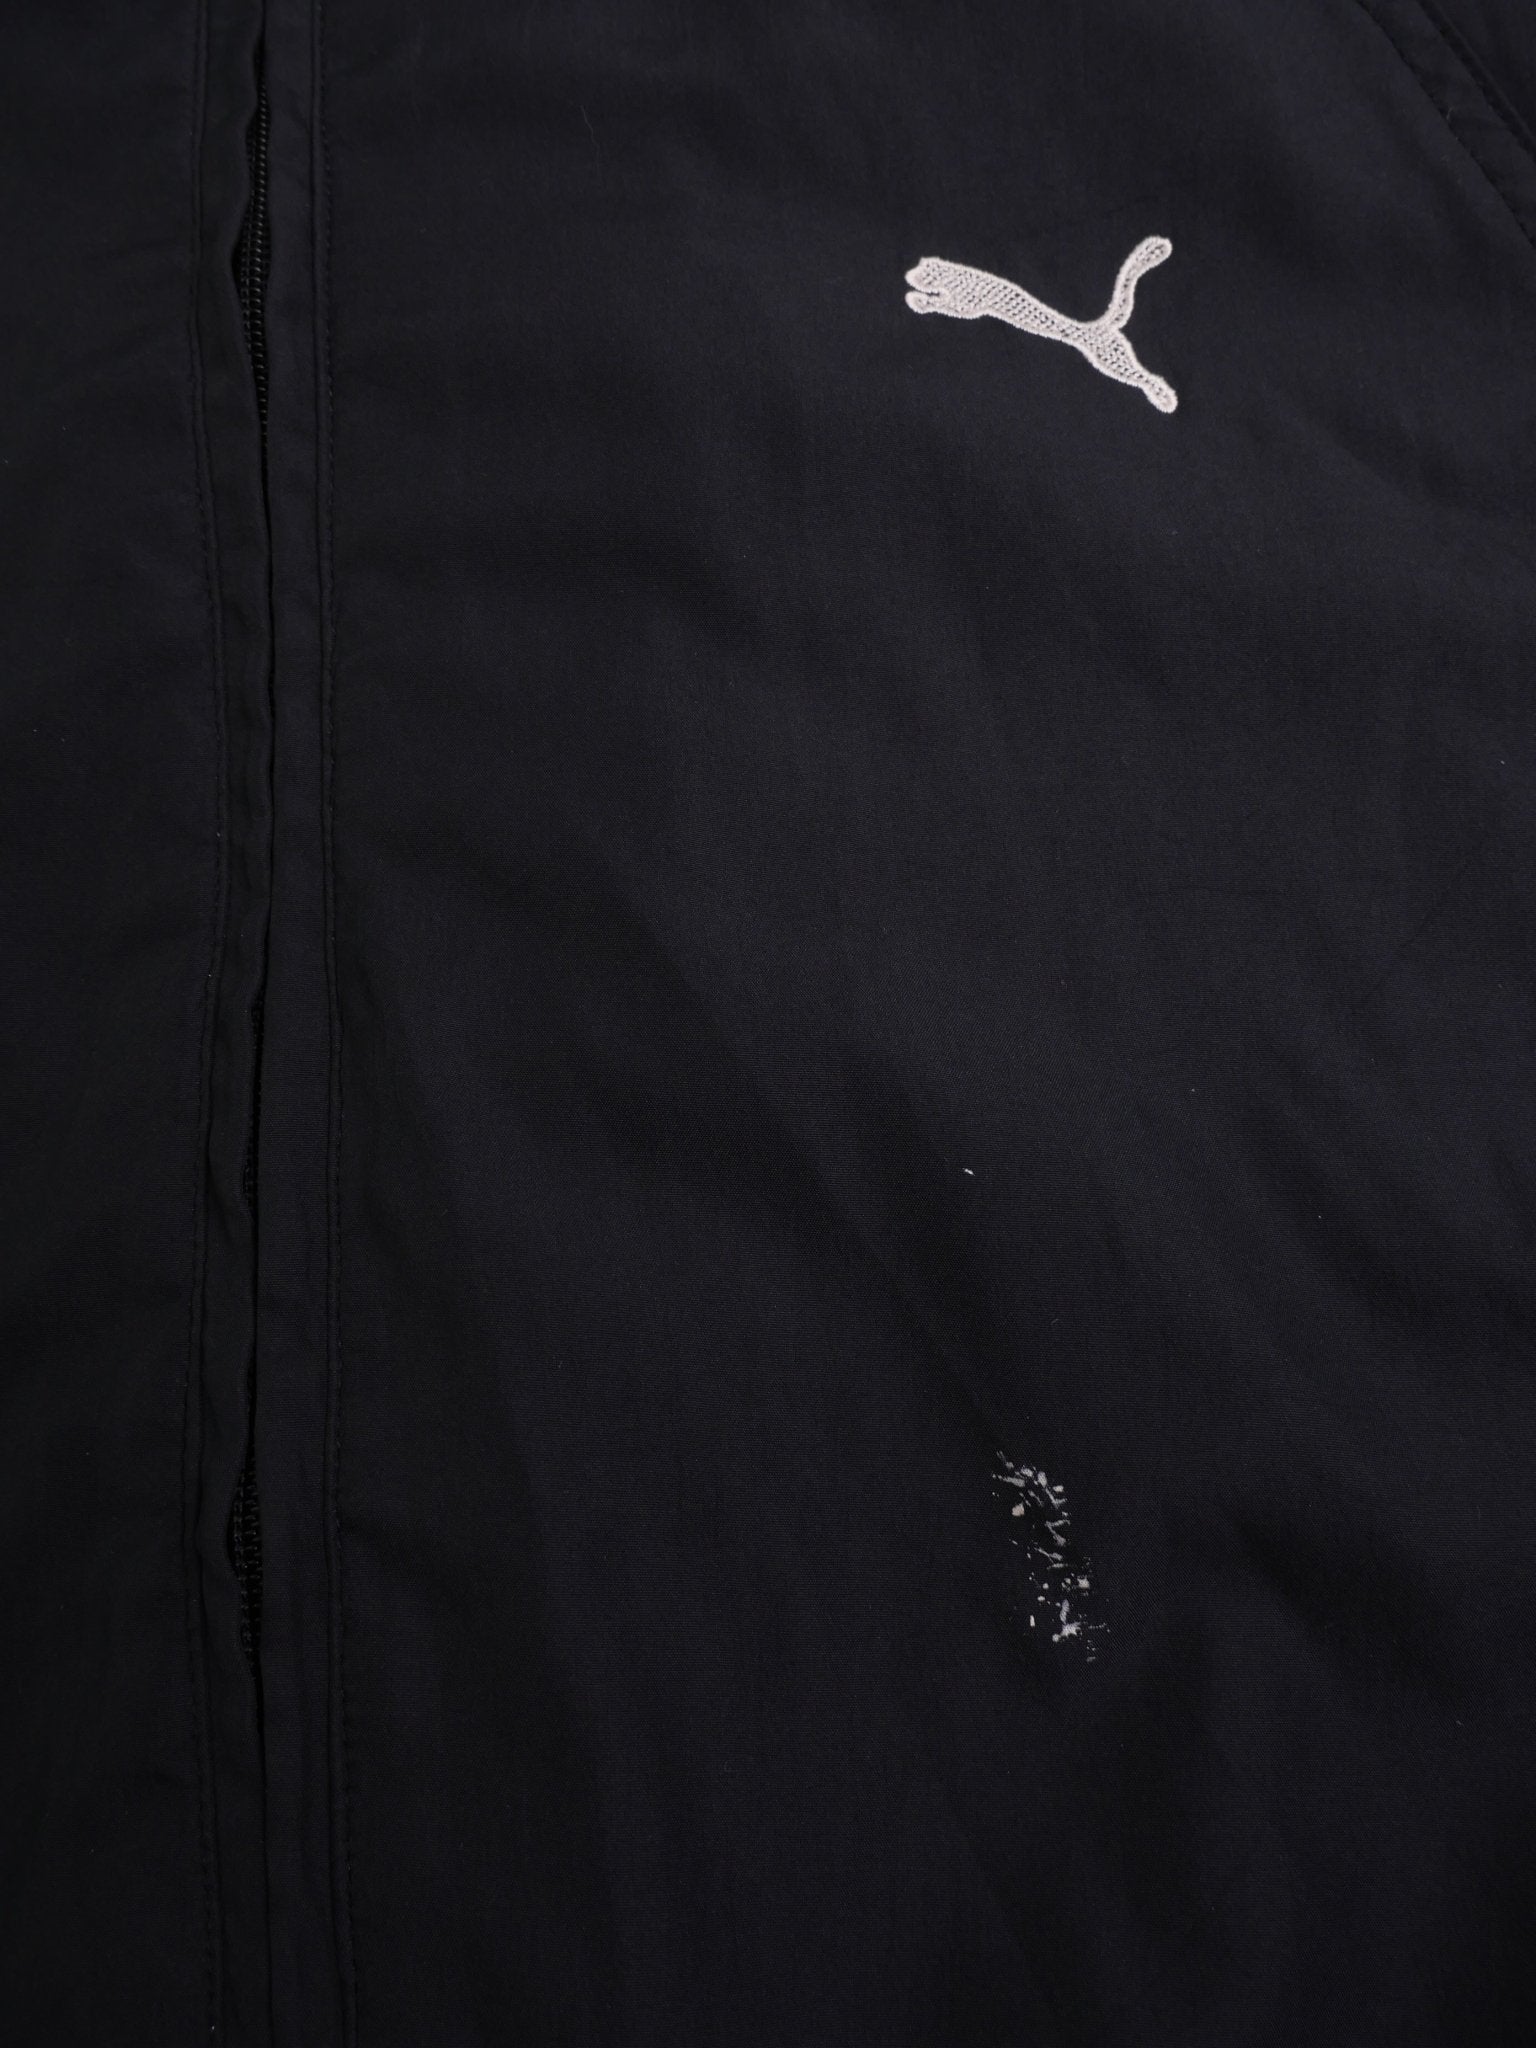 Puma embroidered Logo Vintage Track Jacke - Peeces